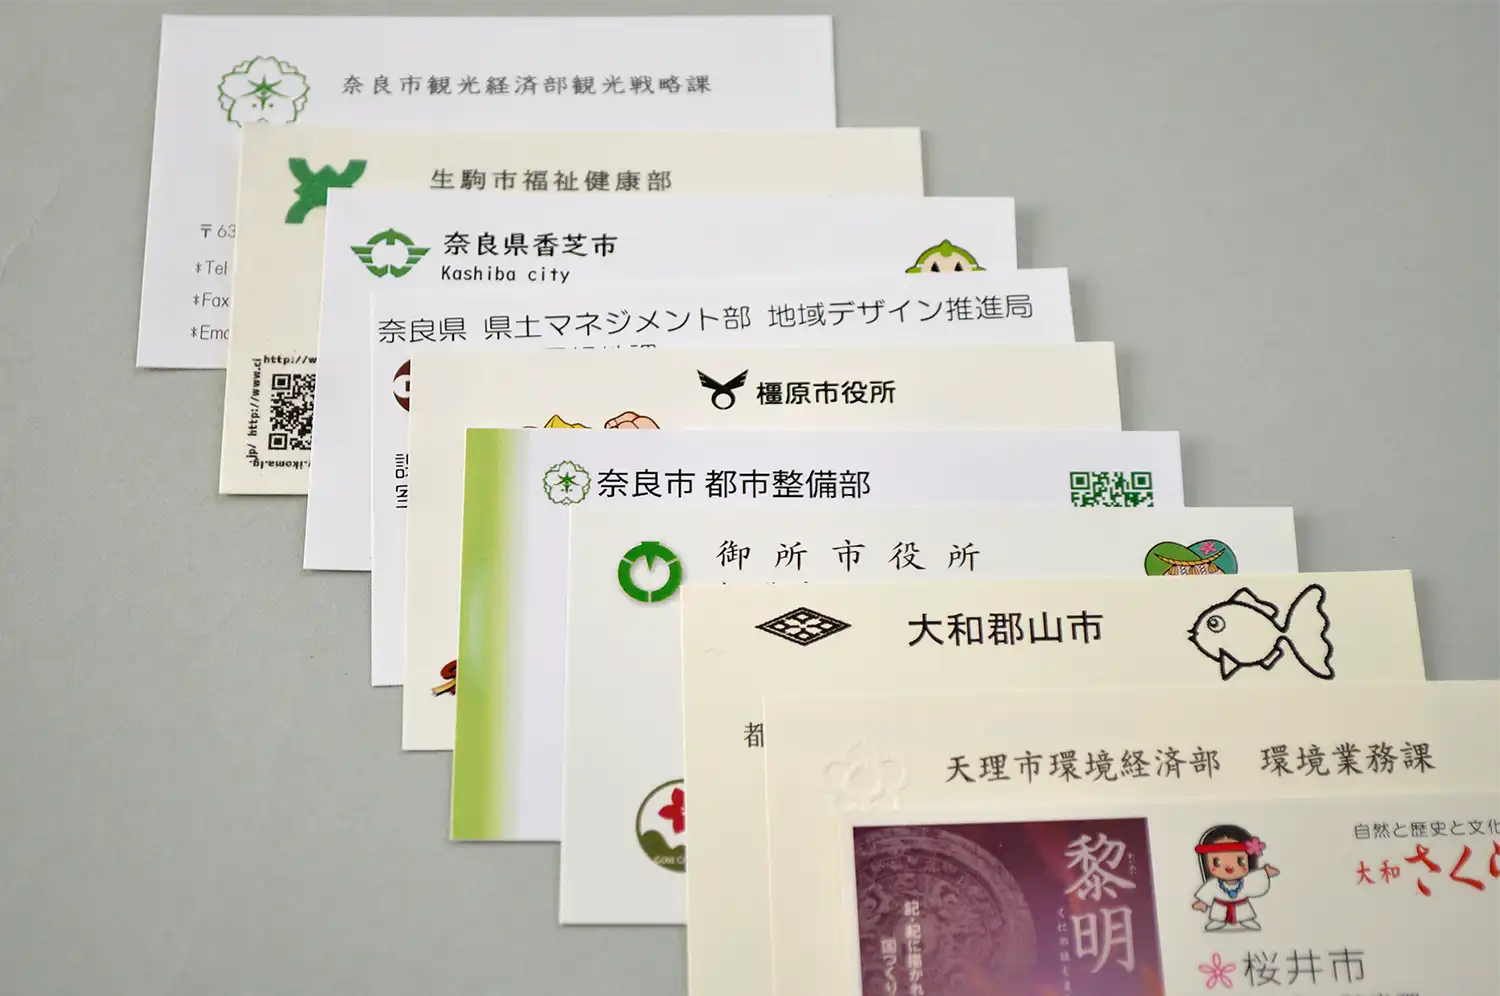 筆者が取材時の名刺交換などで受け取った奈良県内各市職員の名刺